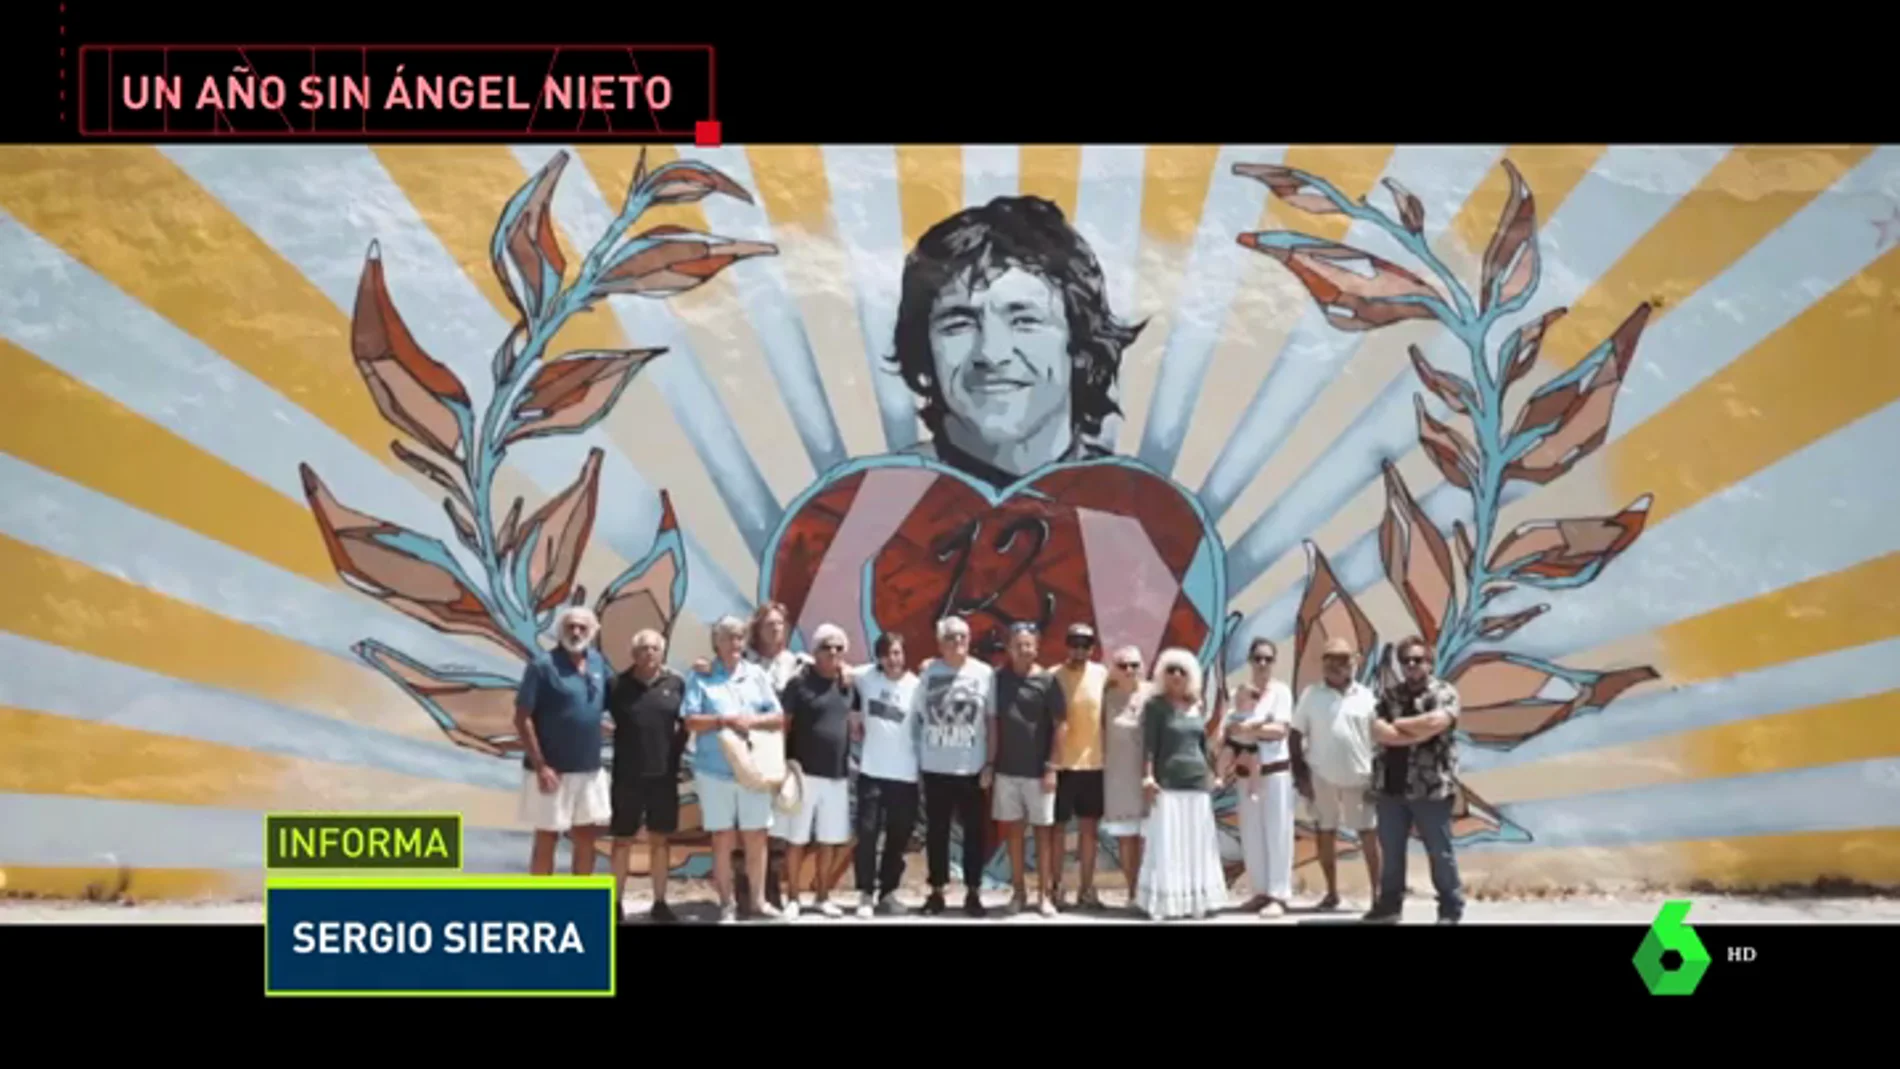 Un mural gigante en Ibiza homenajea a Ángel Nieto un año después de su muerte